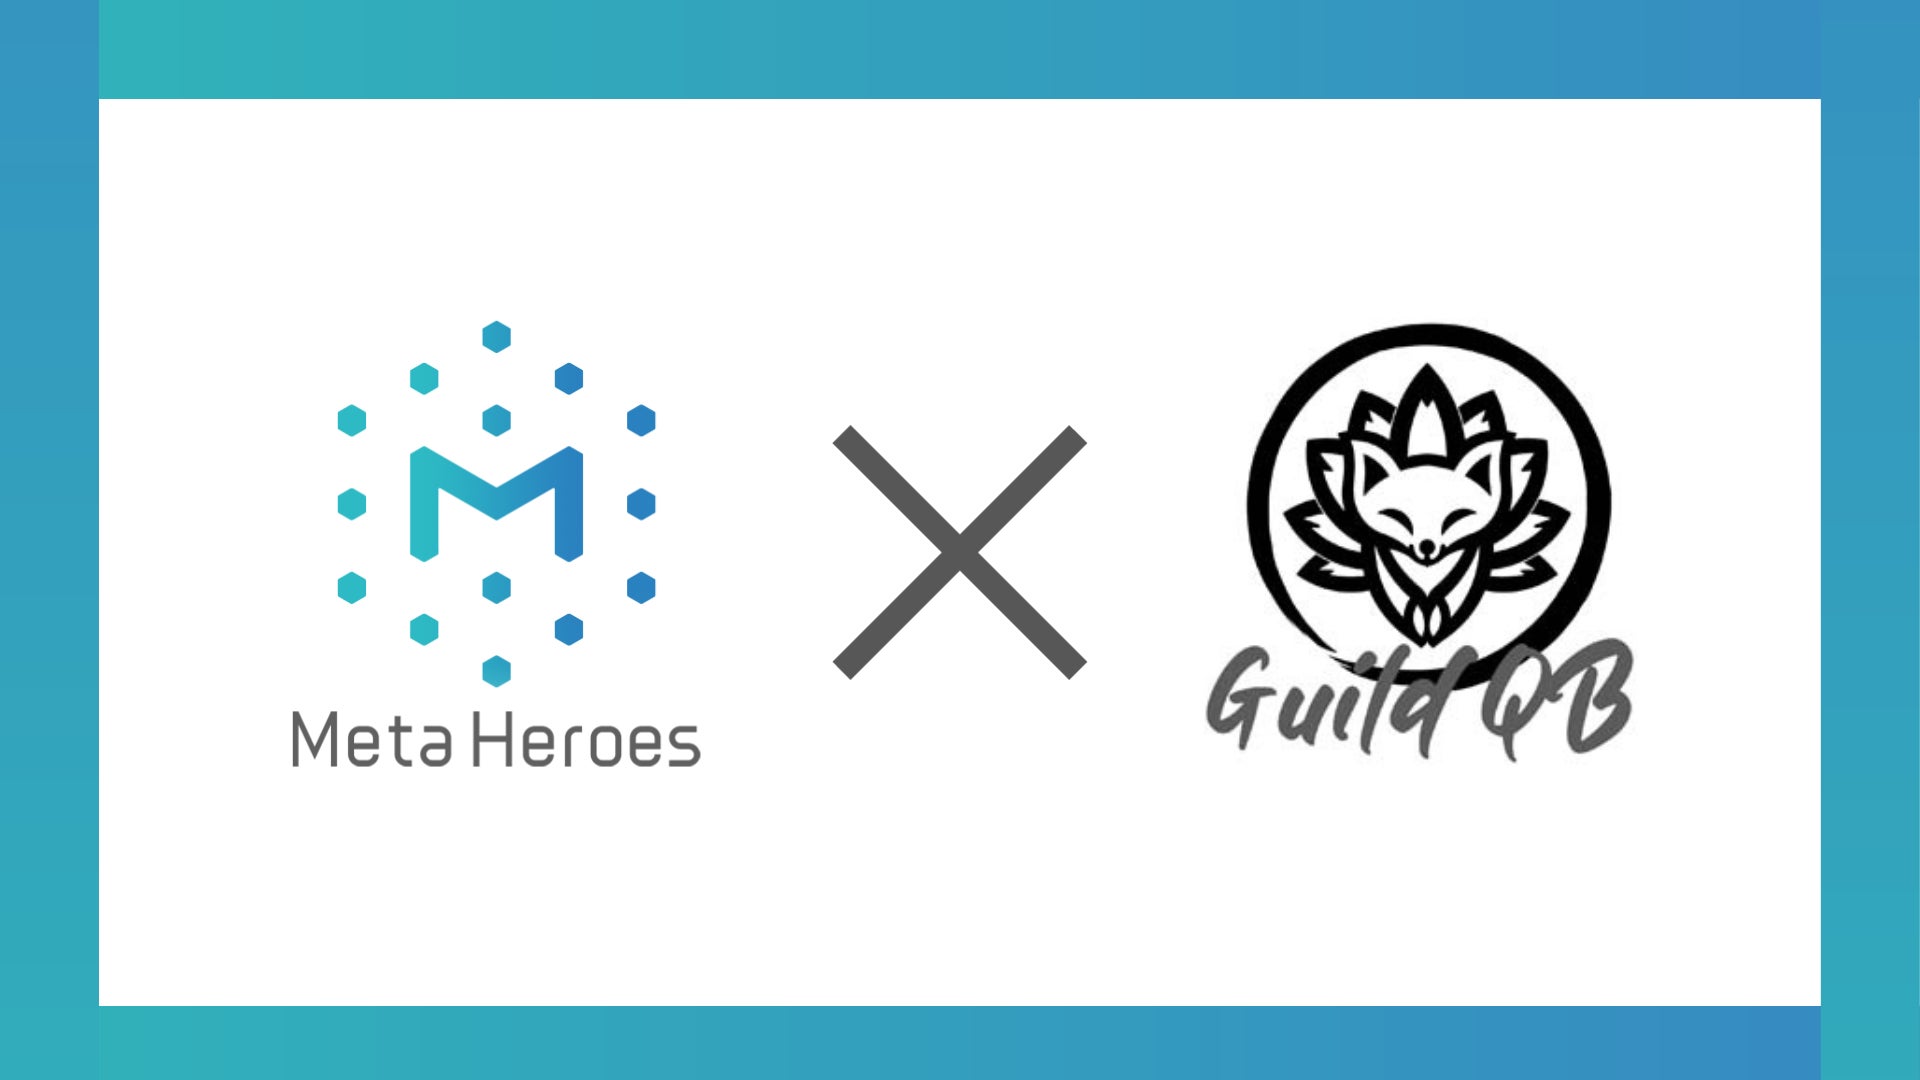 GuildQB、株式会社Meta Heroesと提携してFortnite内にワールドを構築へ